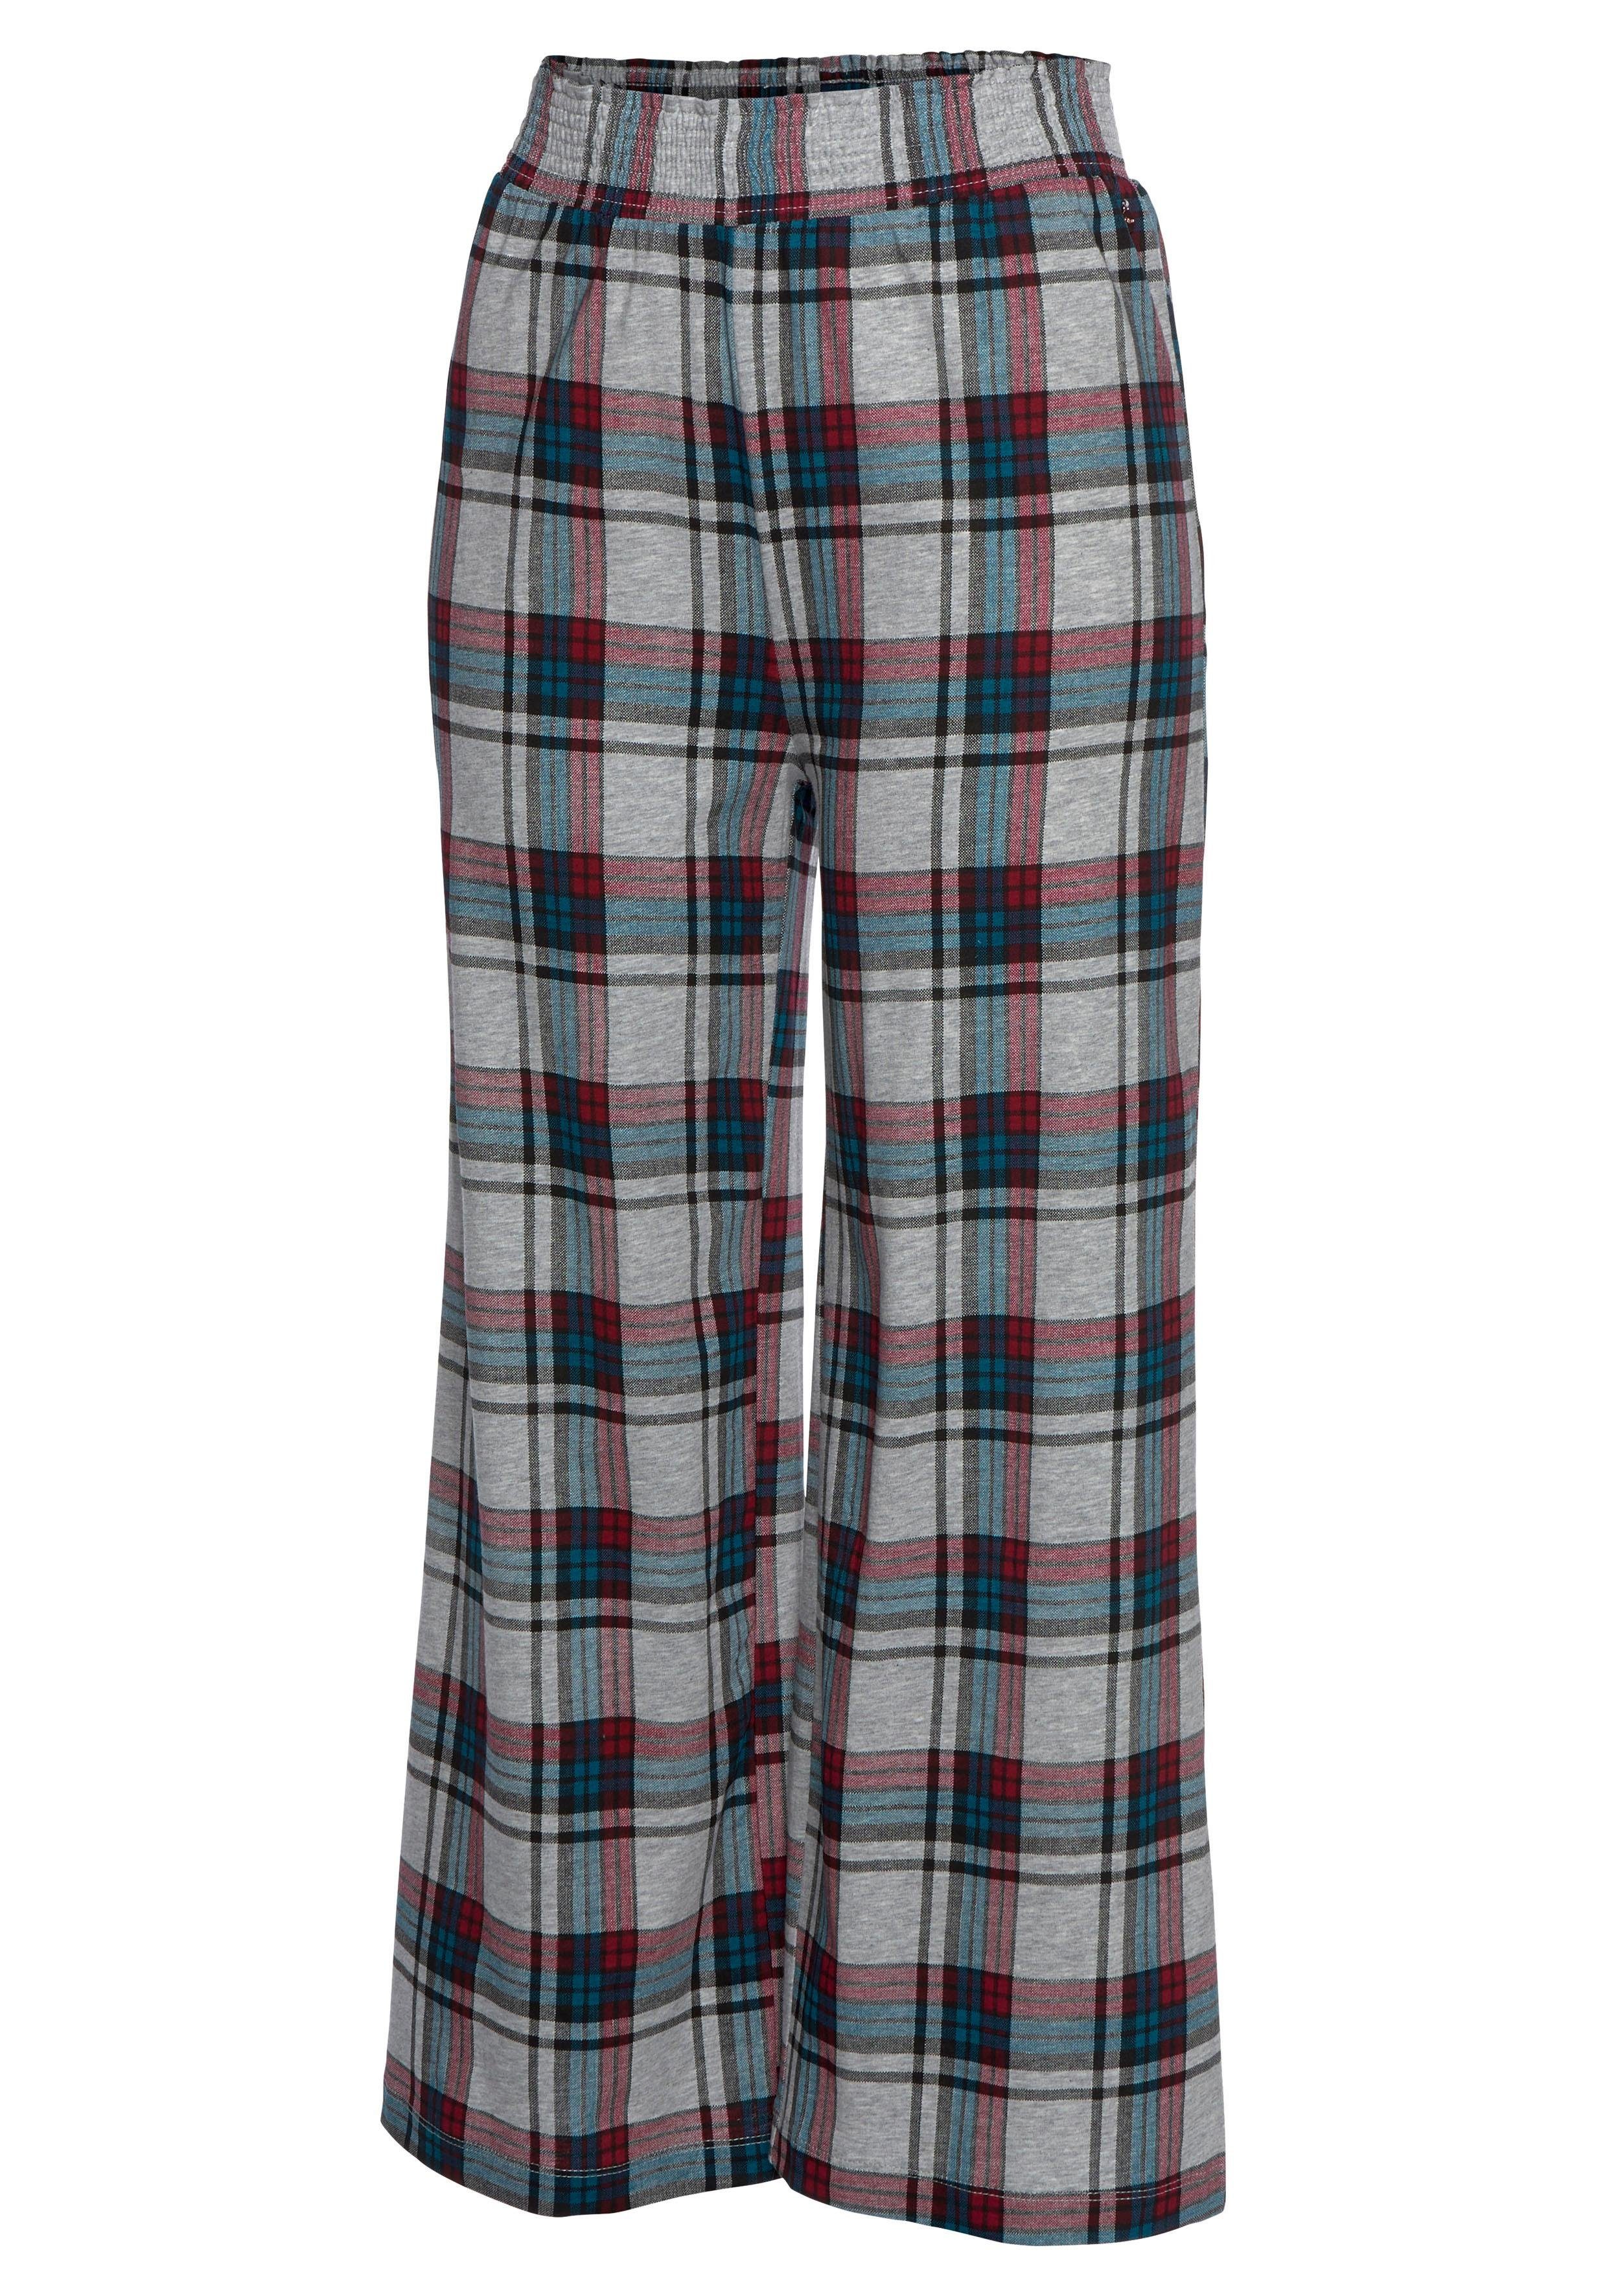 Allover-Muster s.Oliver weiß-petrol-weinrot im Pyjamahose Bund mit elastischem